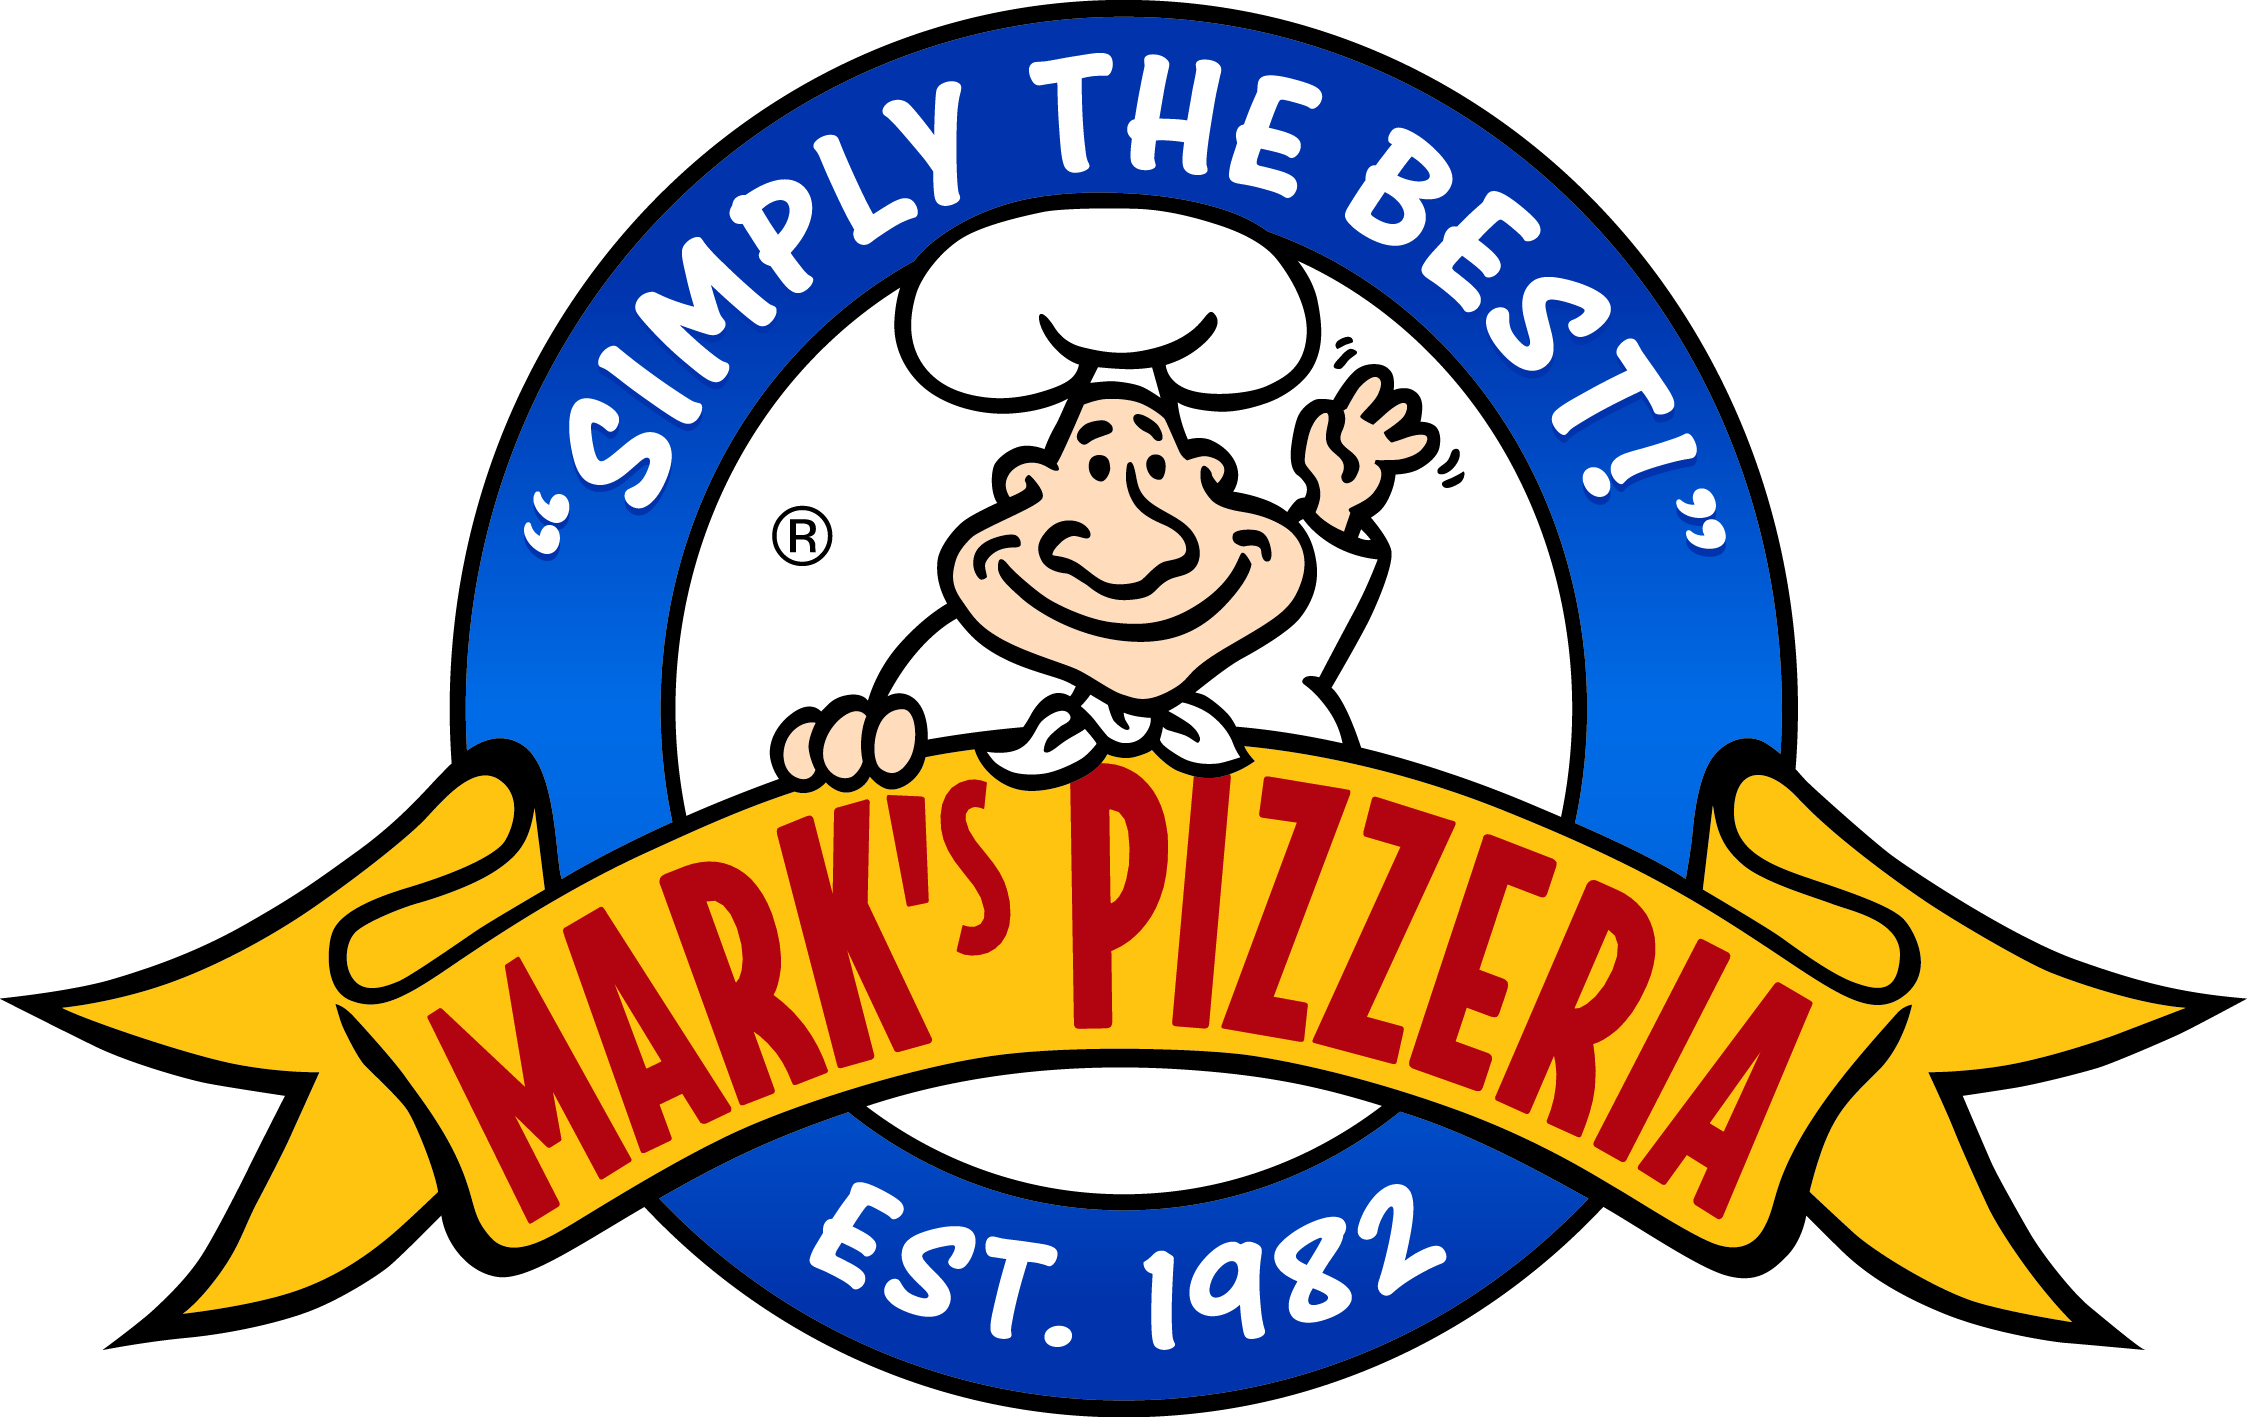 Mark's Pizzeria Rochester